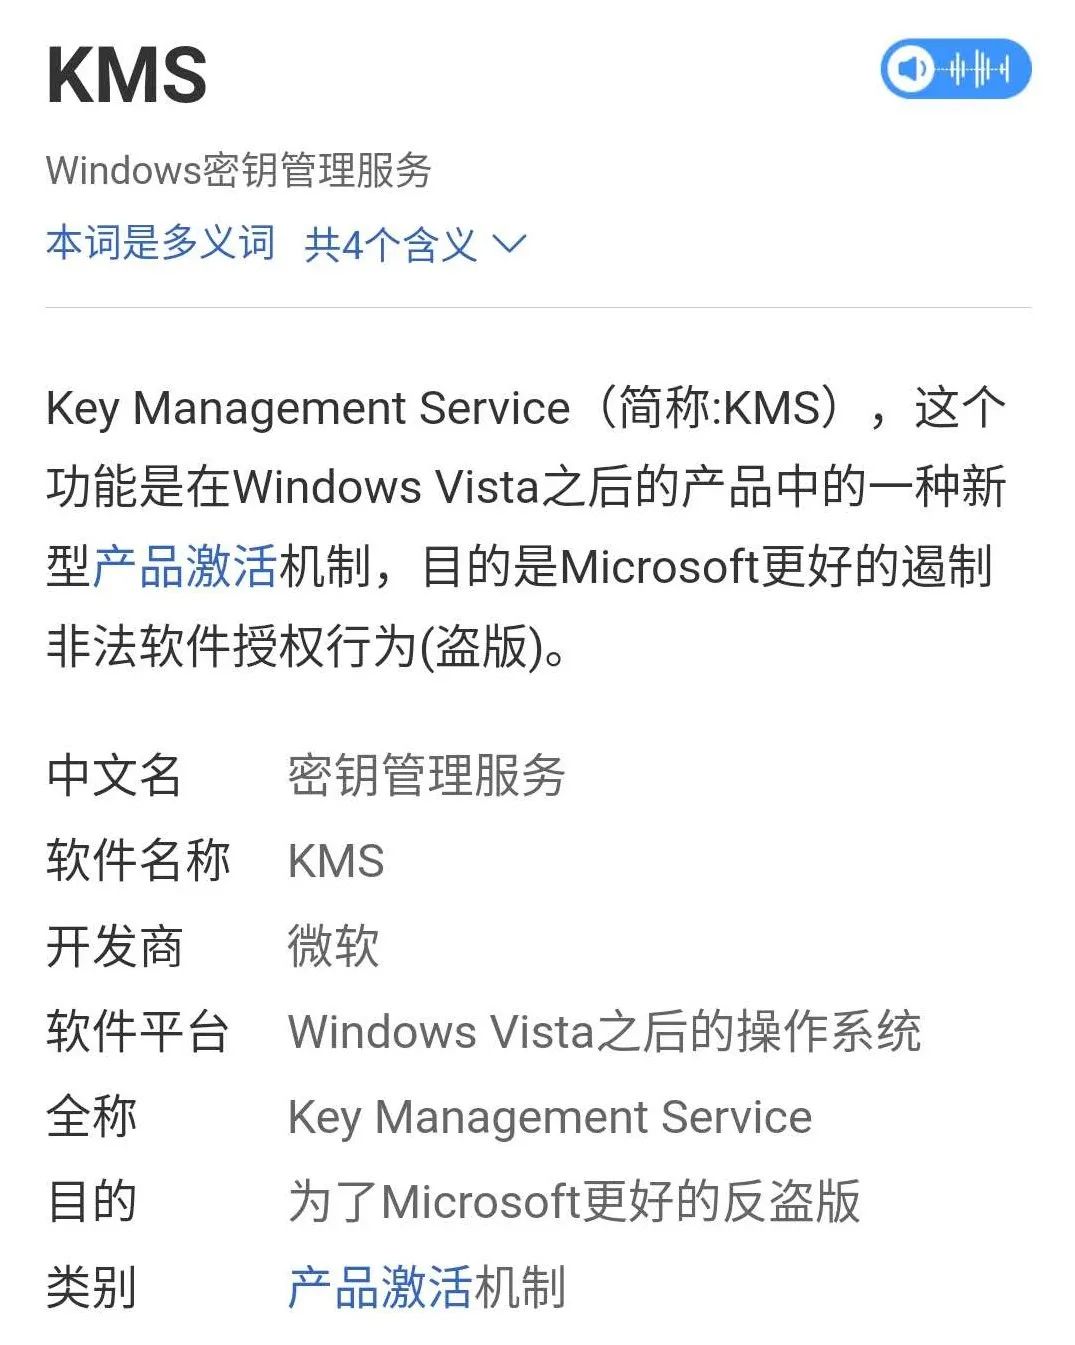 windows10激活码_windows10激活码免费_激活码windows10命令